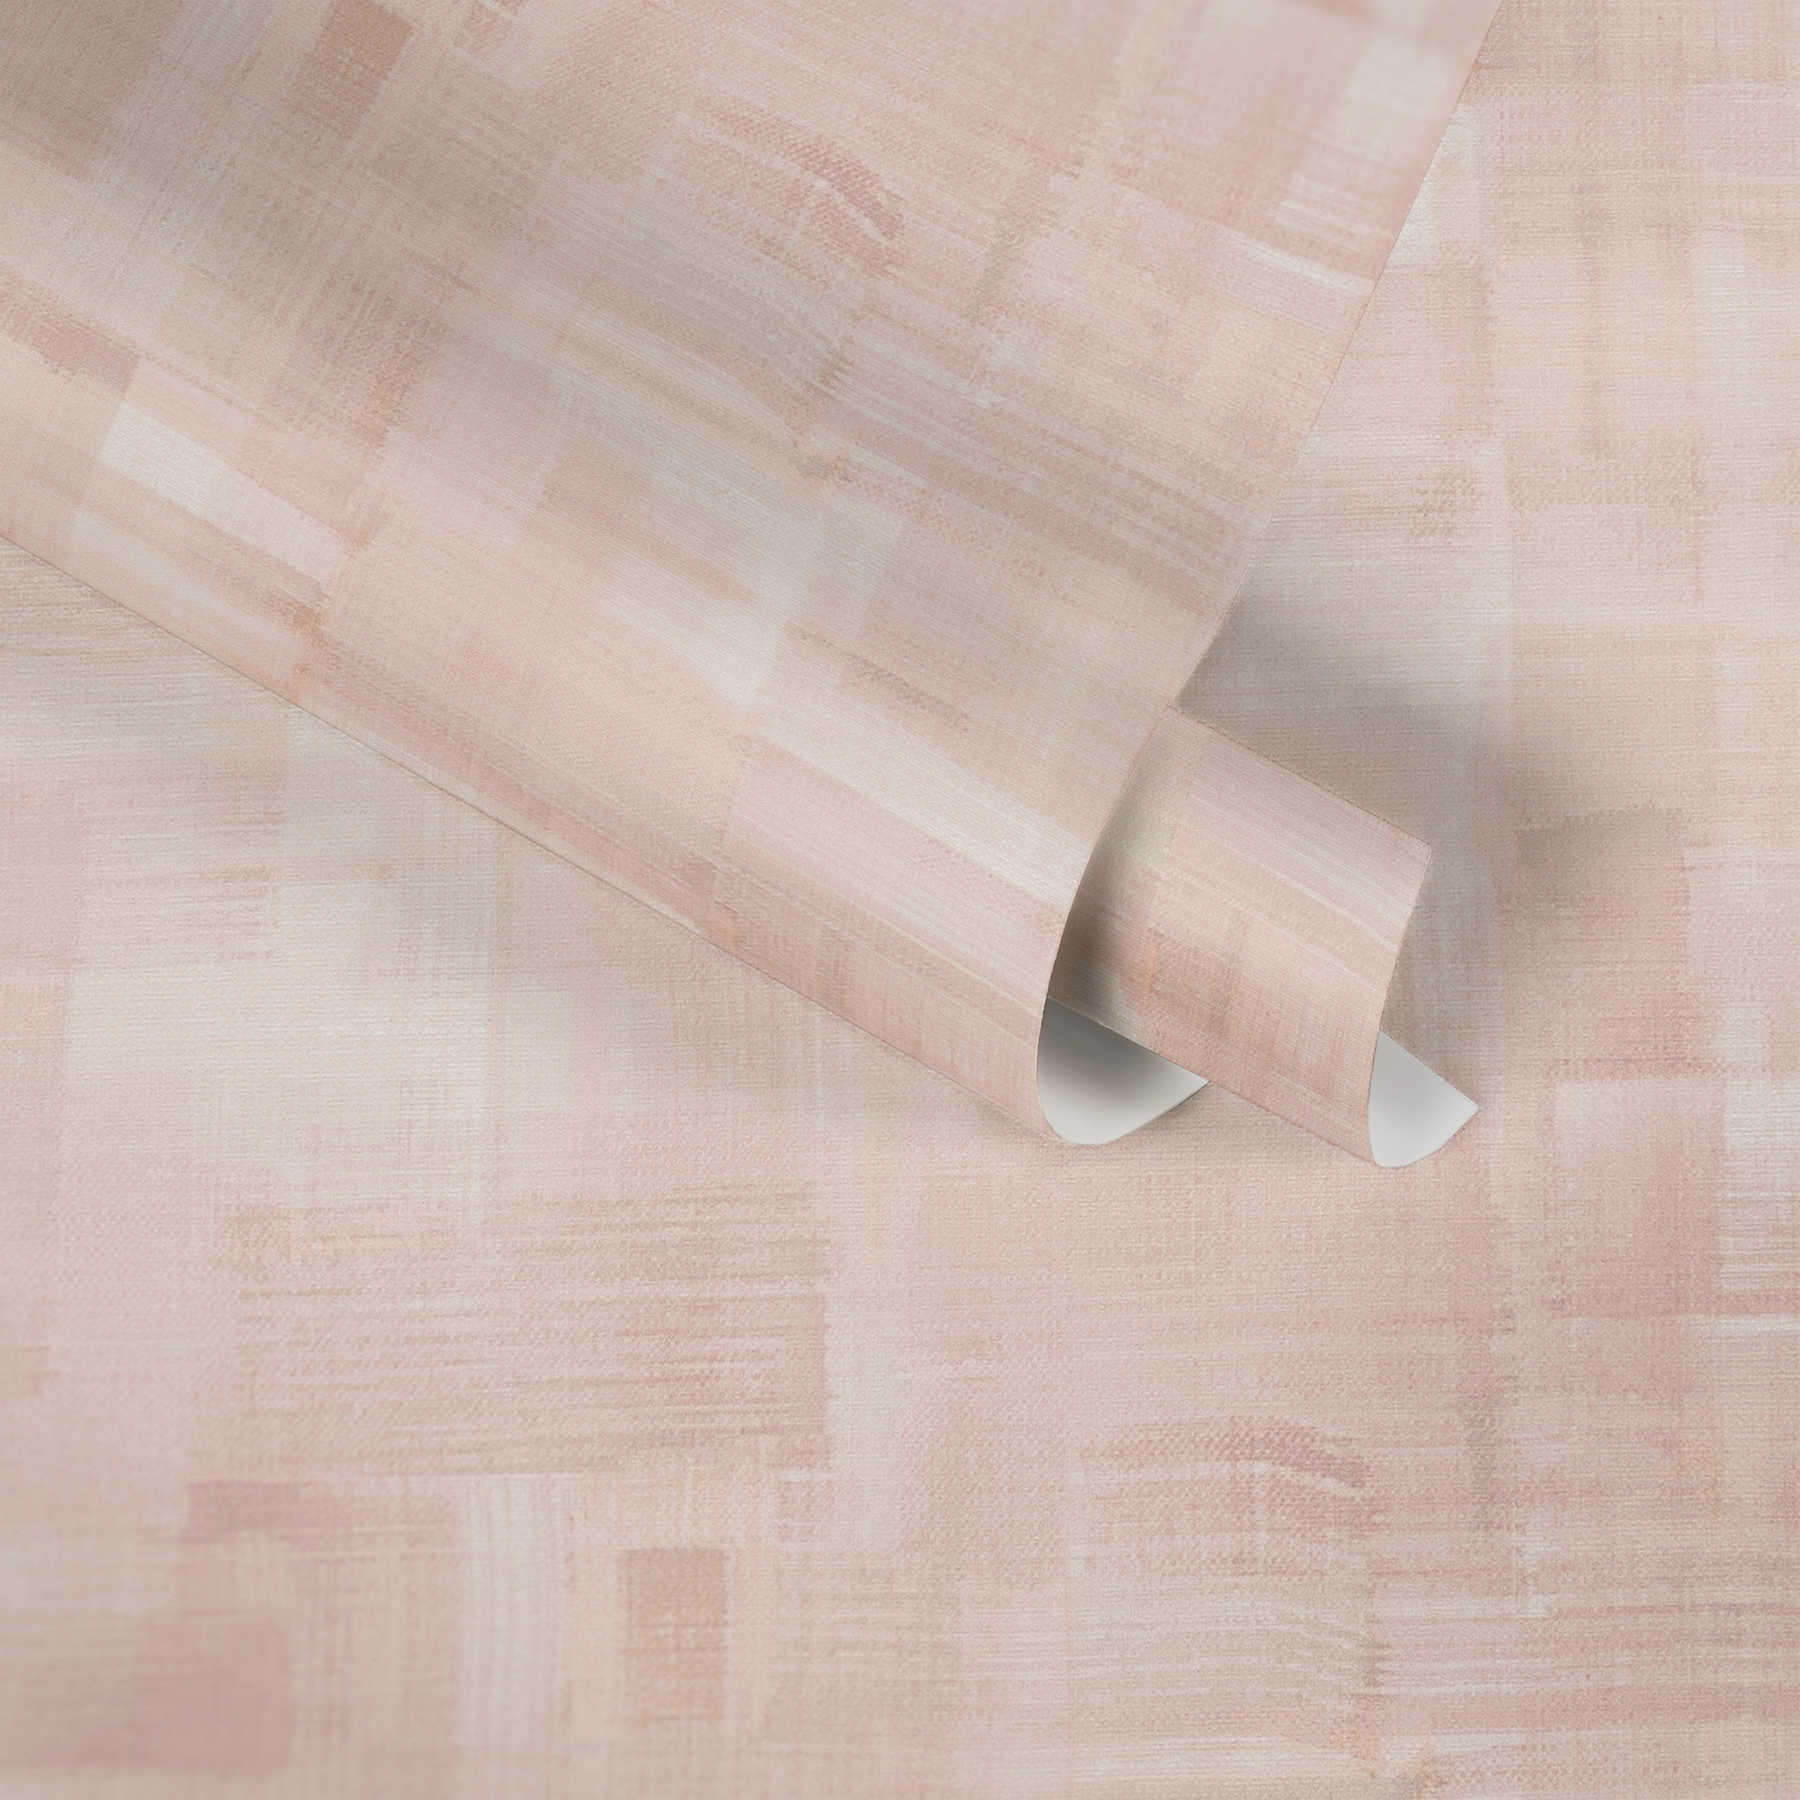             Papier peint Toile structurée, Art moderne - Rose, beige
        